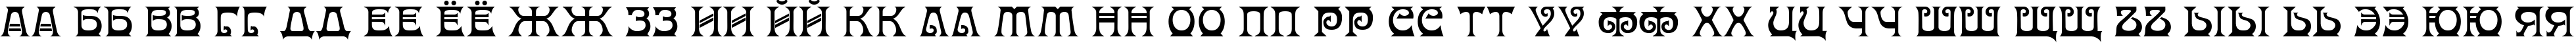 Пример написания русского алфавита шрифтом Donaldina Normal